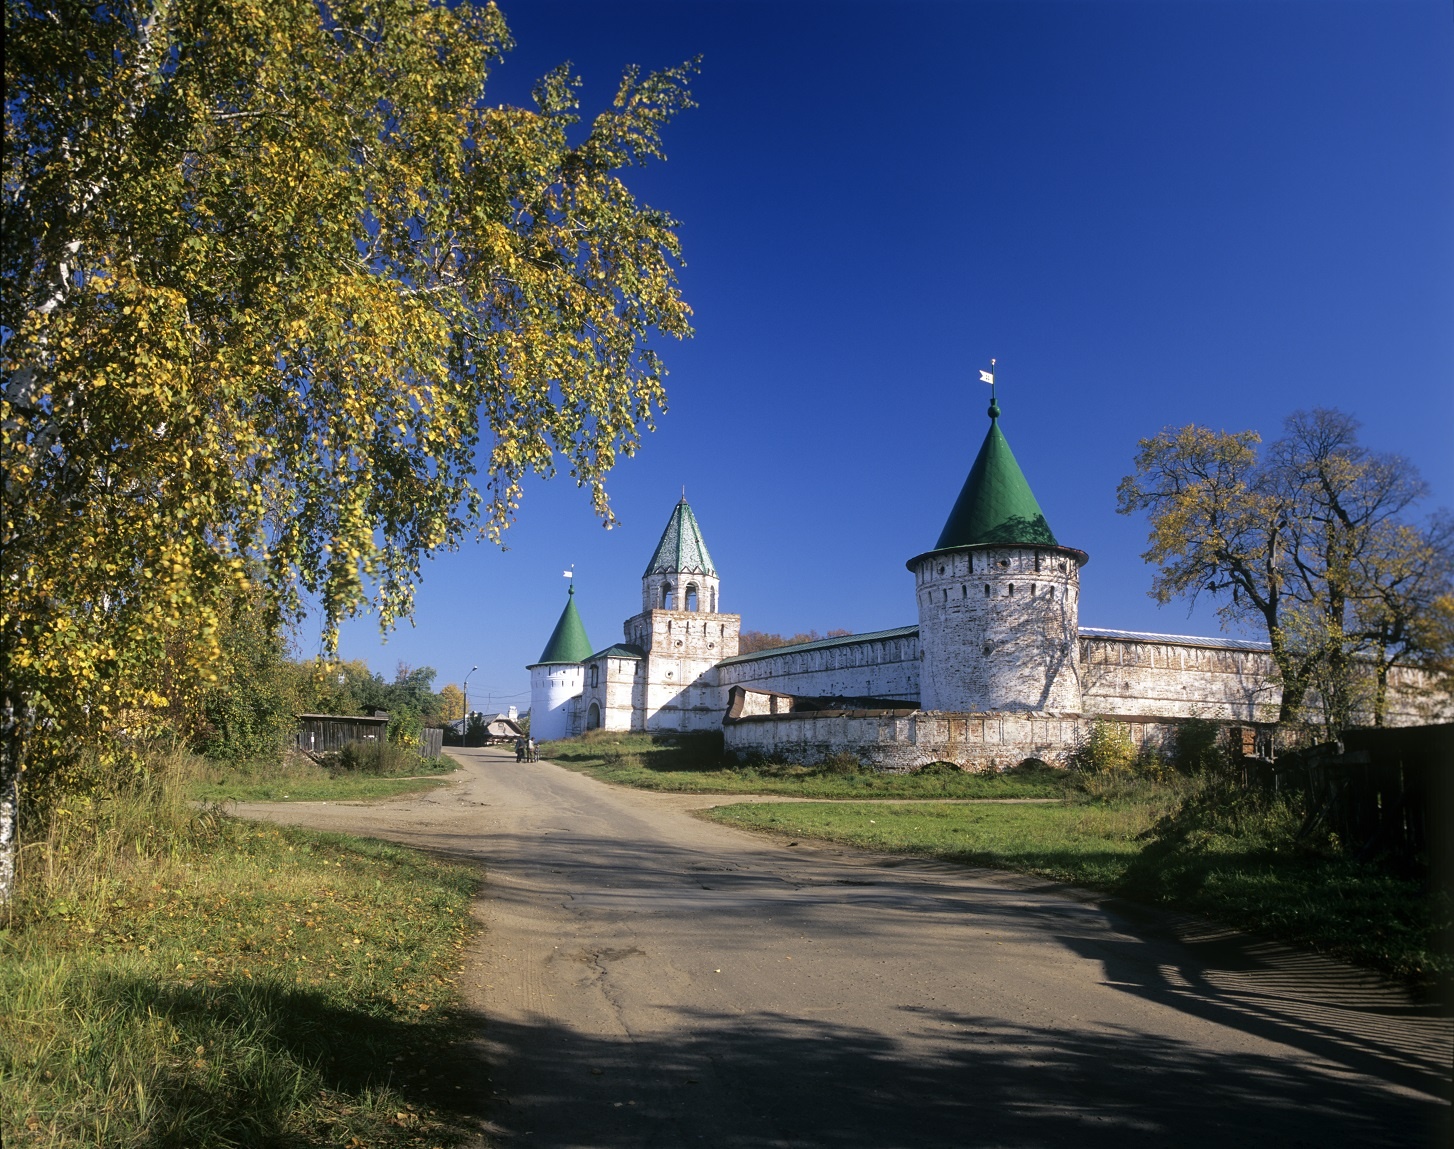 Матвиенко: Культурное наследие Костромской области является неотъемлемой частью национального достояния России